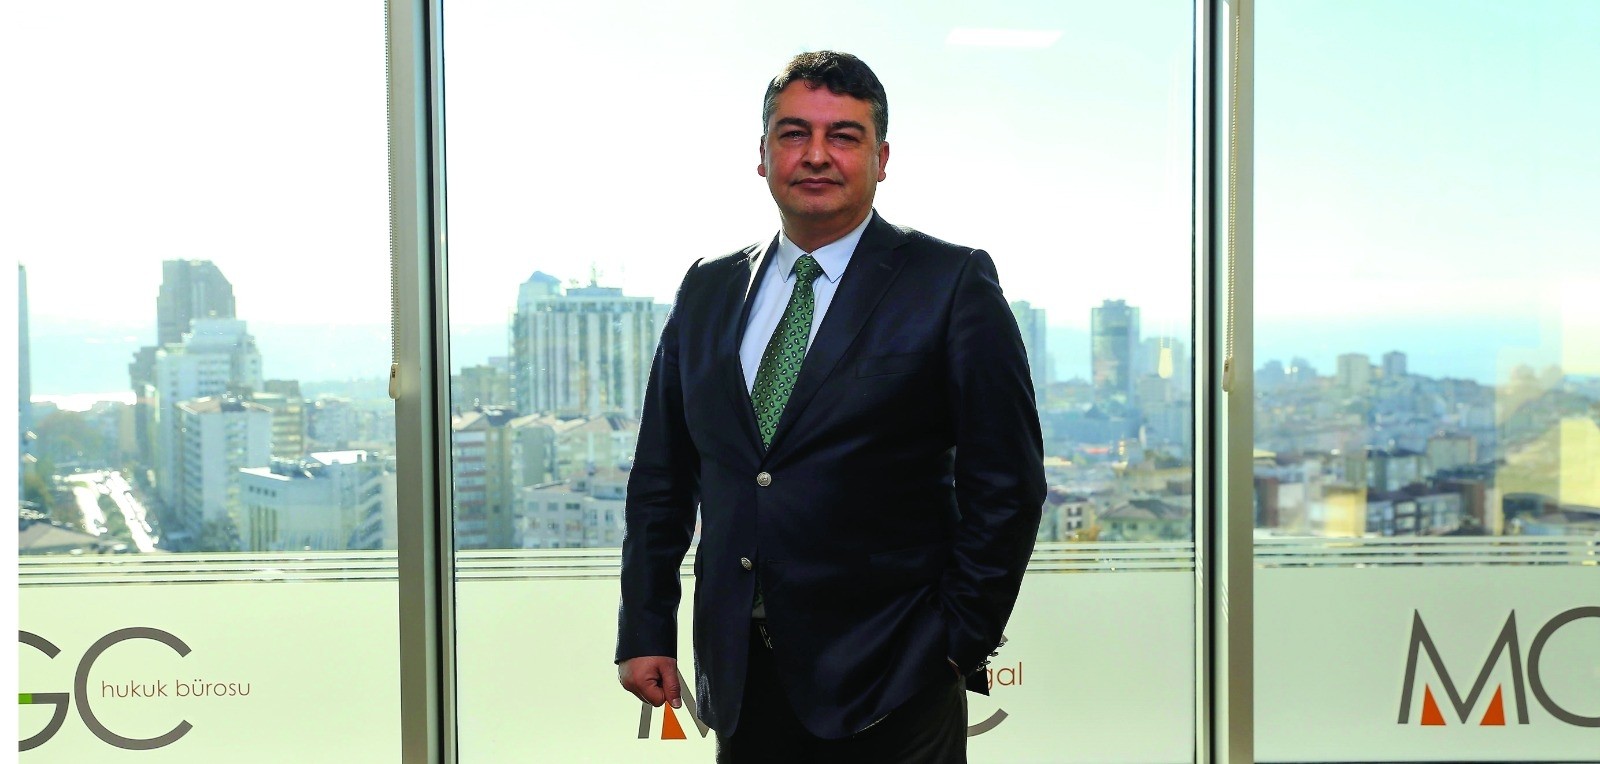 Uluslararası hukuk devi Andersen Global Türkiye’de MGC iş birliğinde büyüyecek